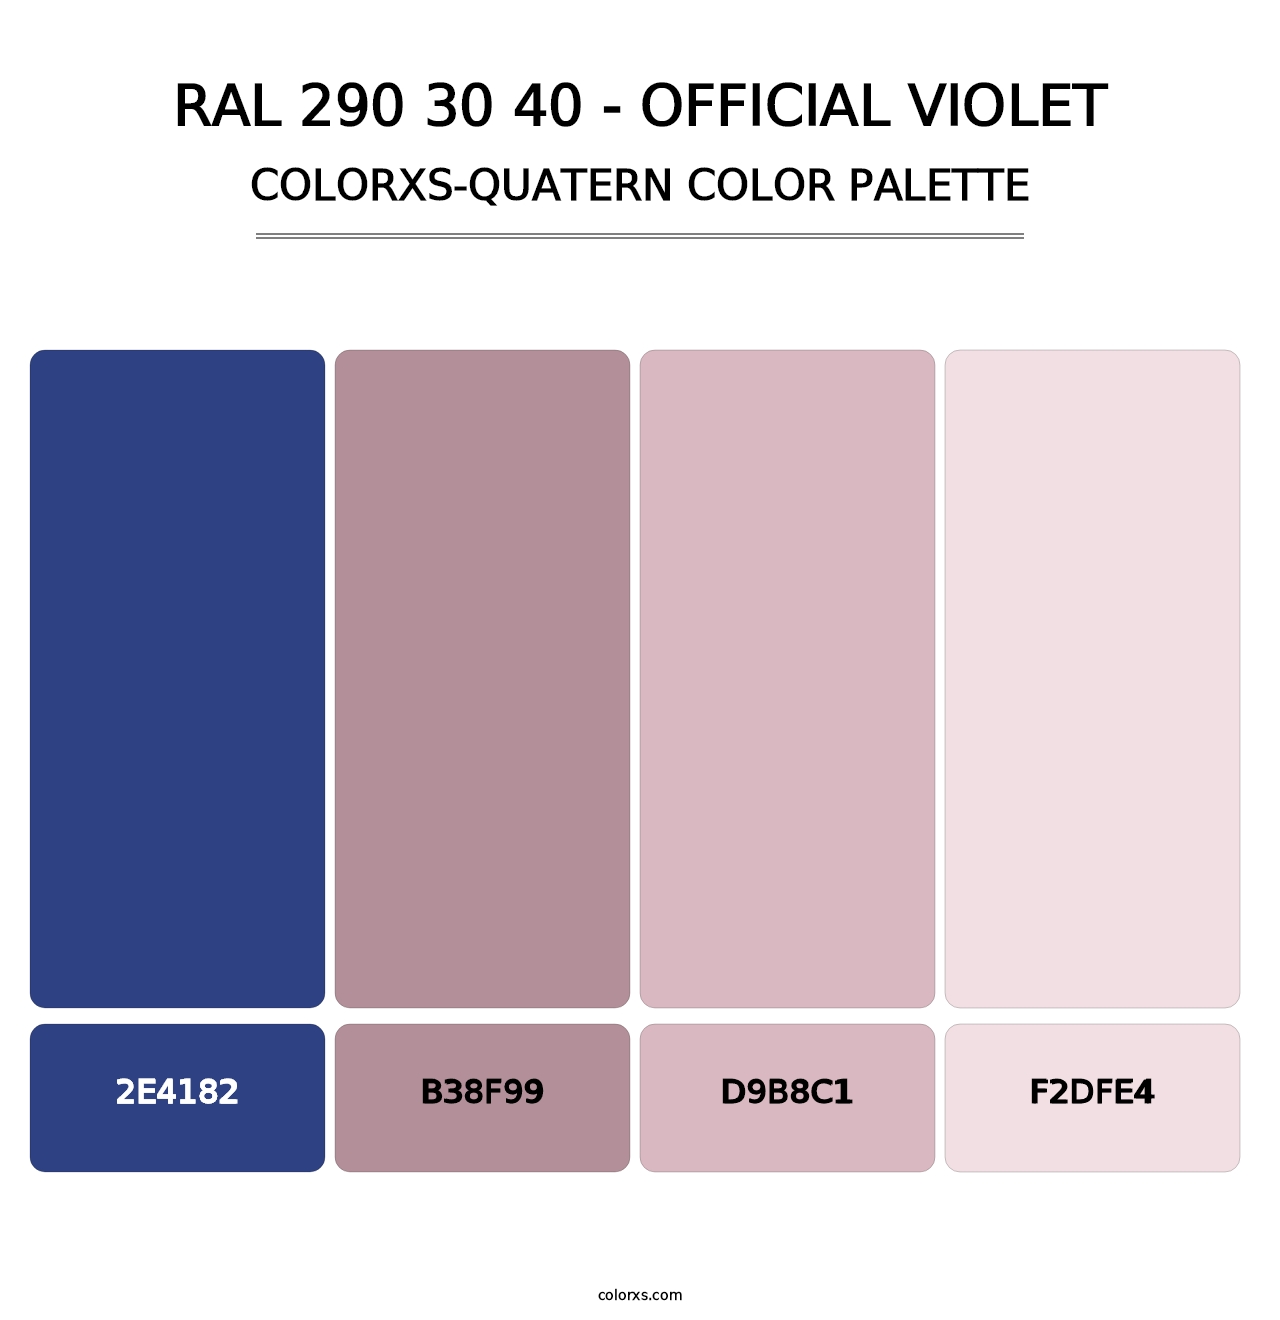 RAL 290 30 40 - Official Violet - Colorxs Quatern Palette